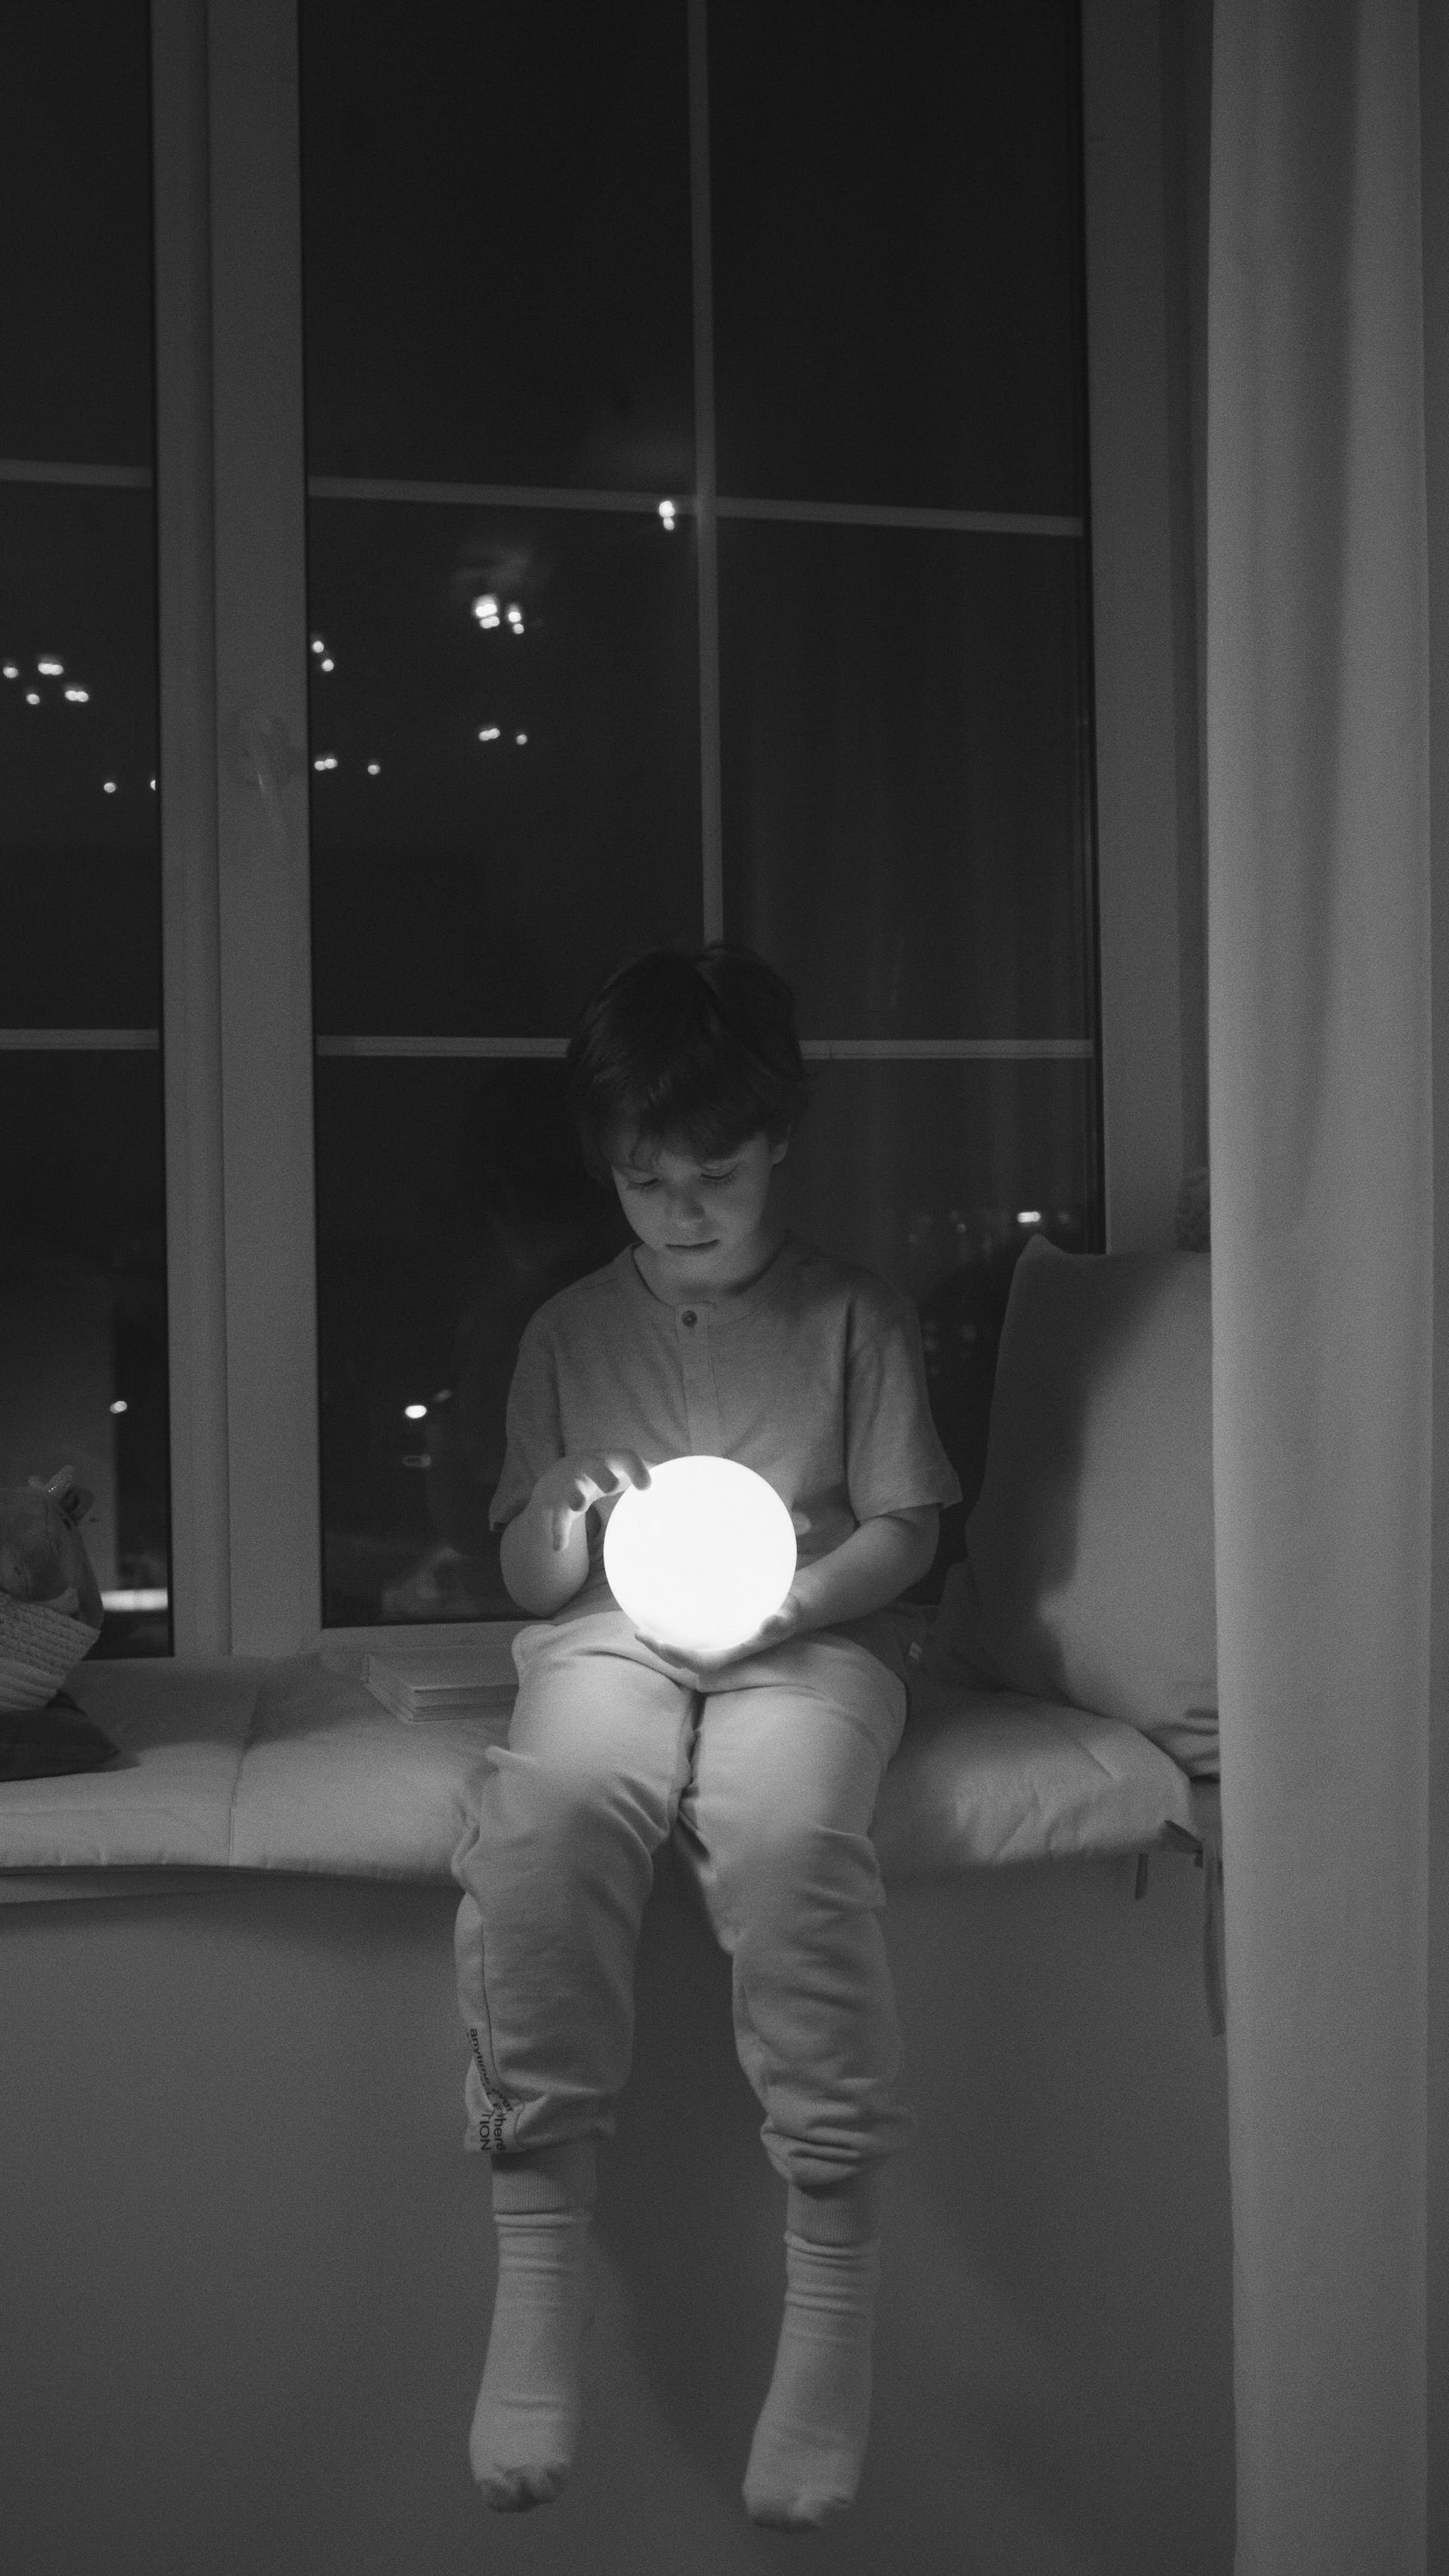 A boy holding a light ball | Source: Pexels